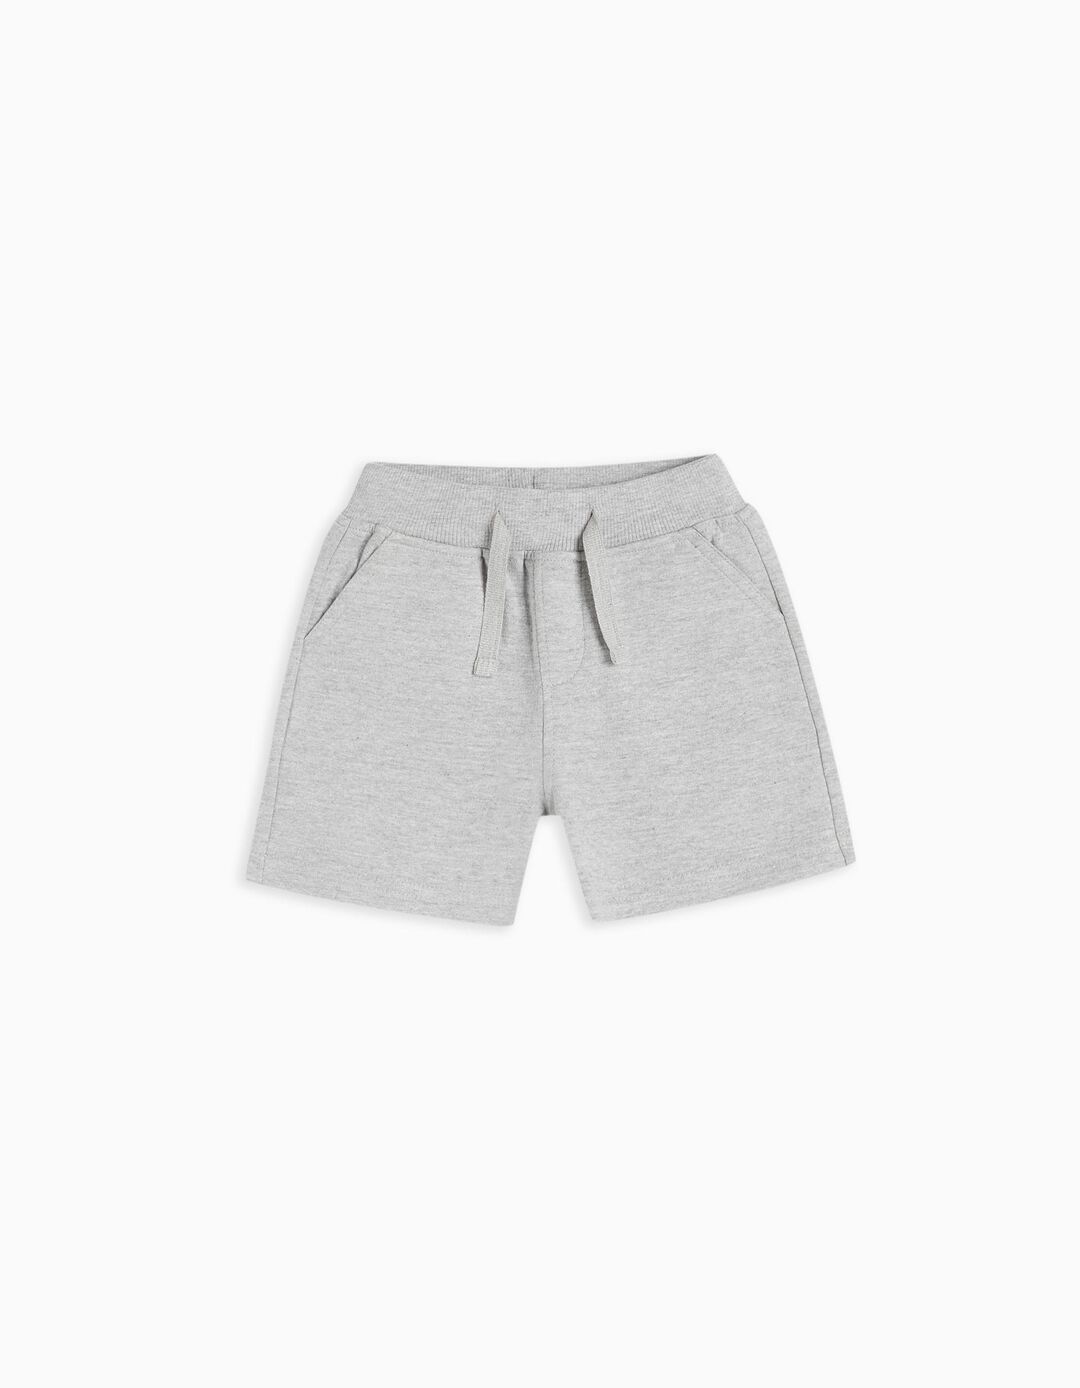 Fleece Shorts, Baby Boys, Grey